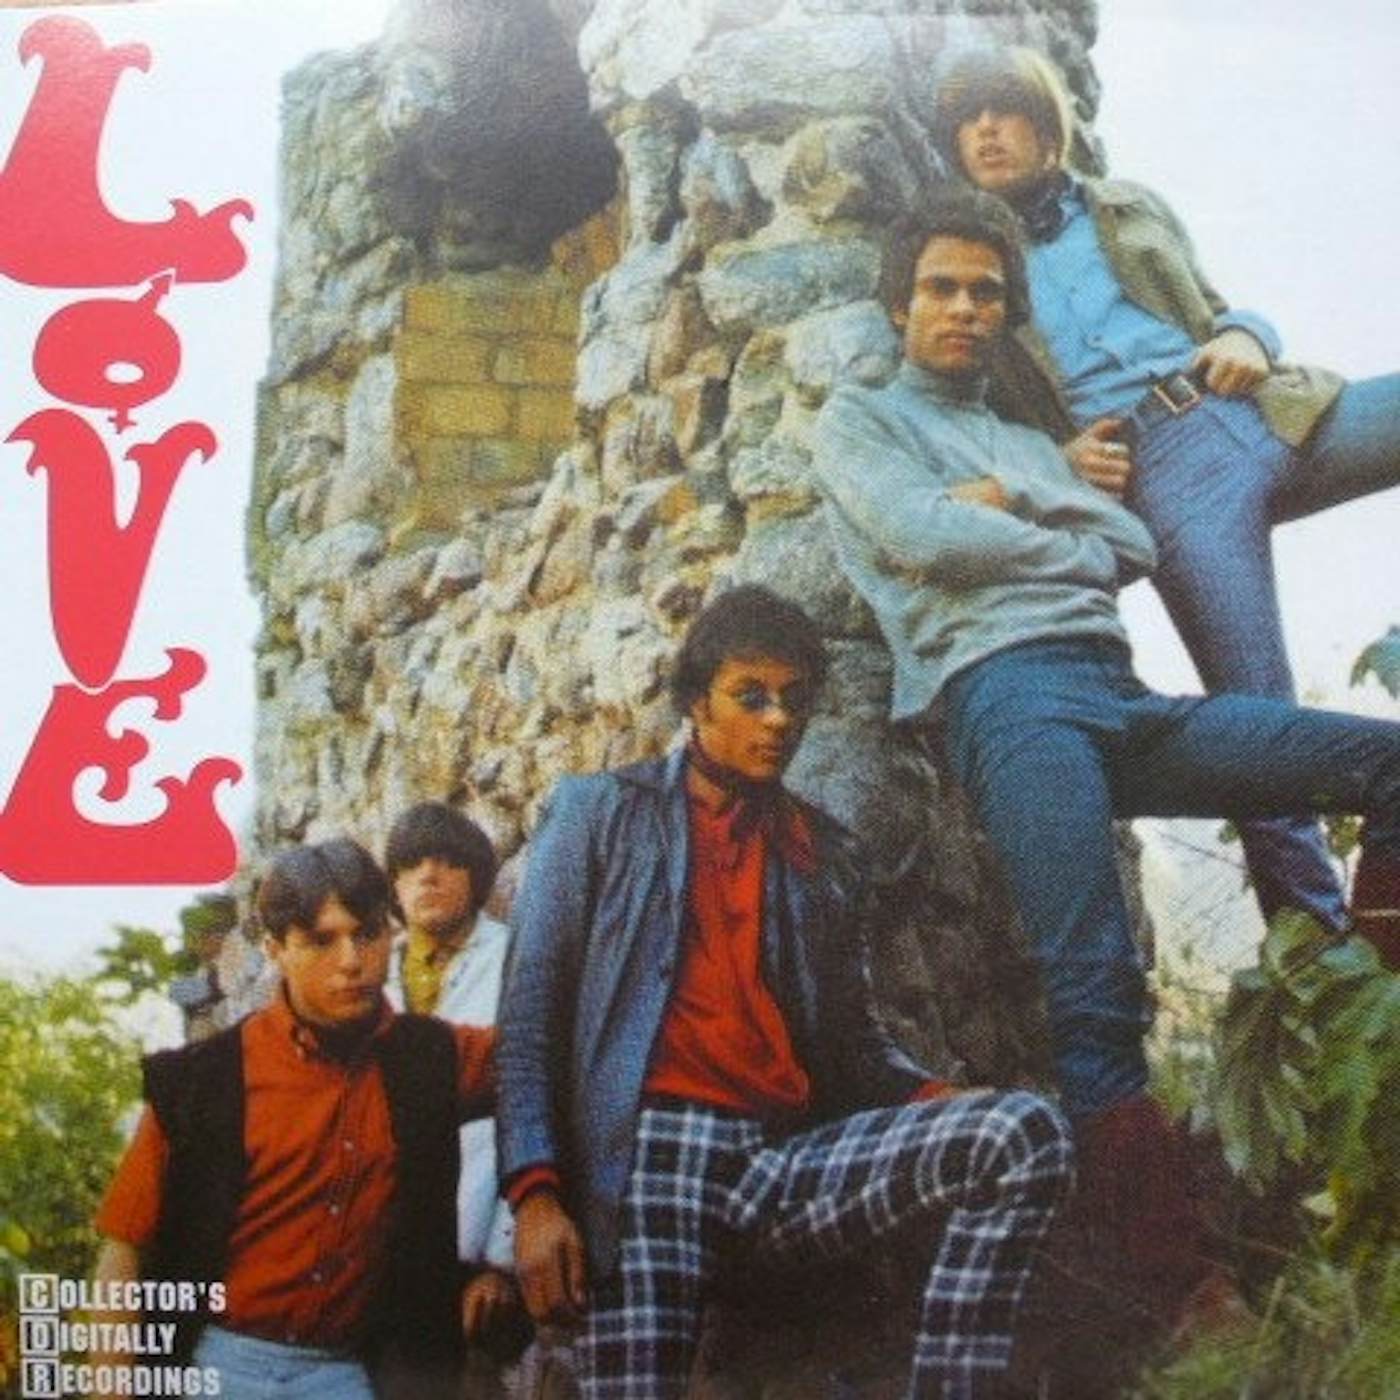 Love Vinyl Record